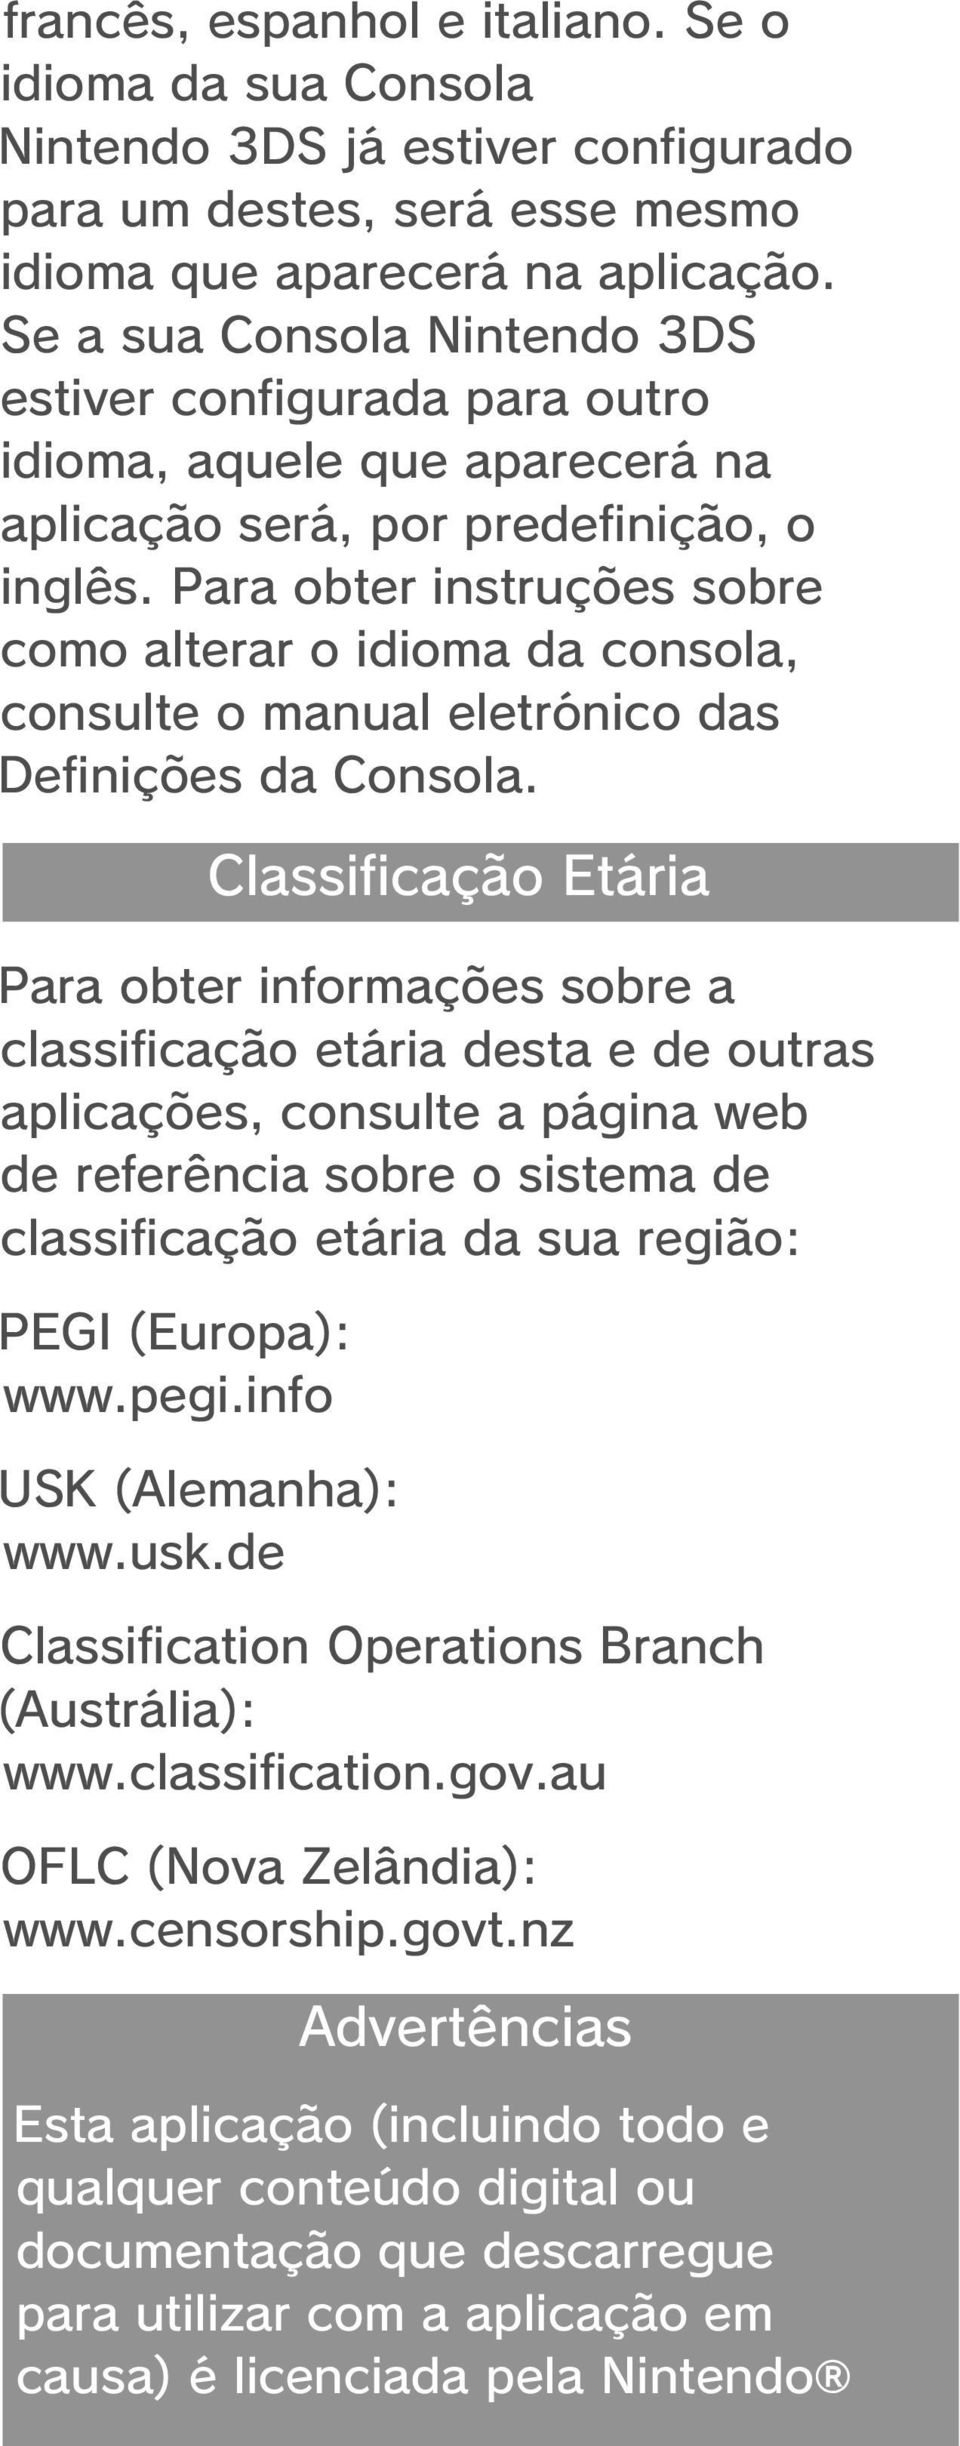 Para obter instruções sobre como alterar o idioma da consola, consulte o manual eletrónico das Definições da Consola.